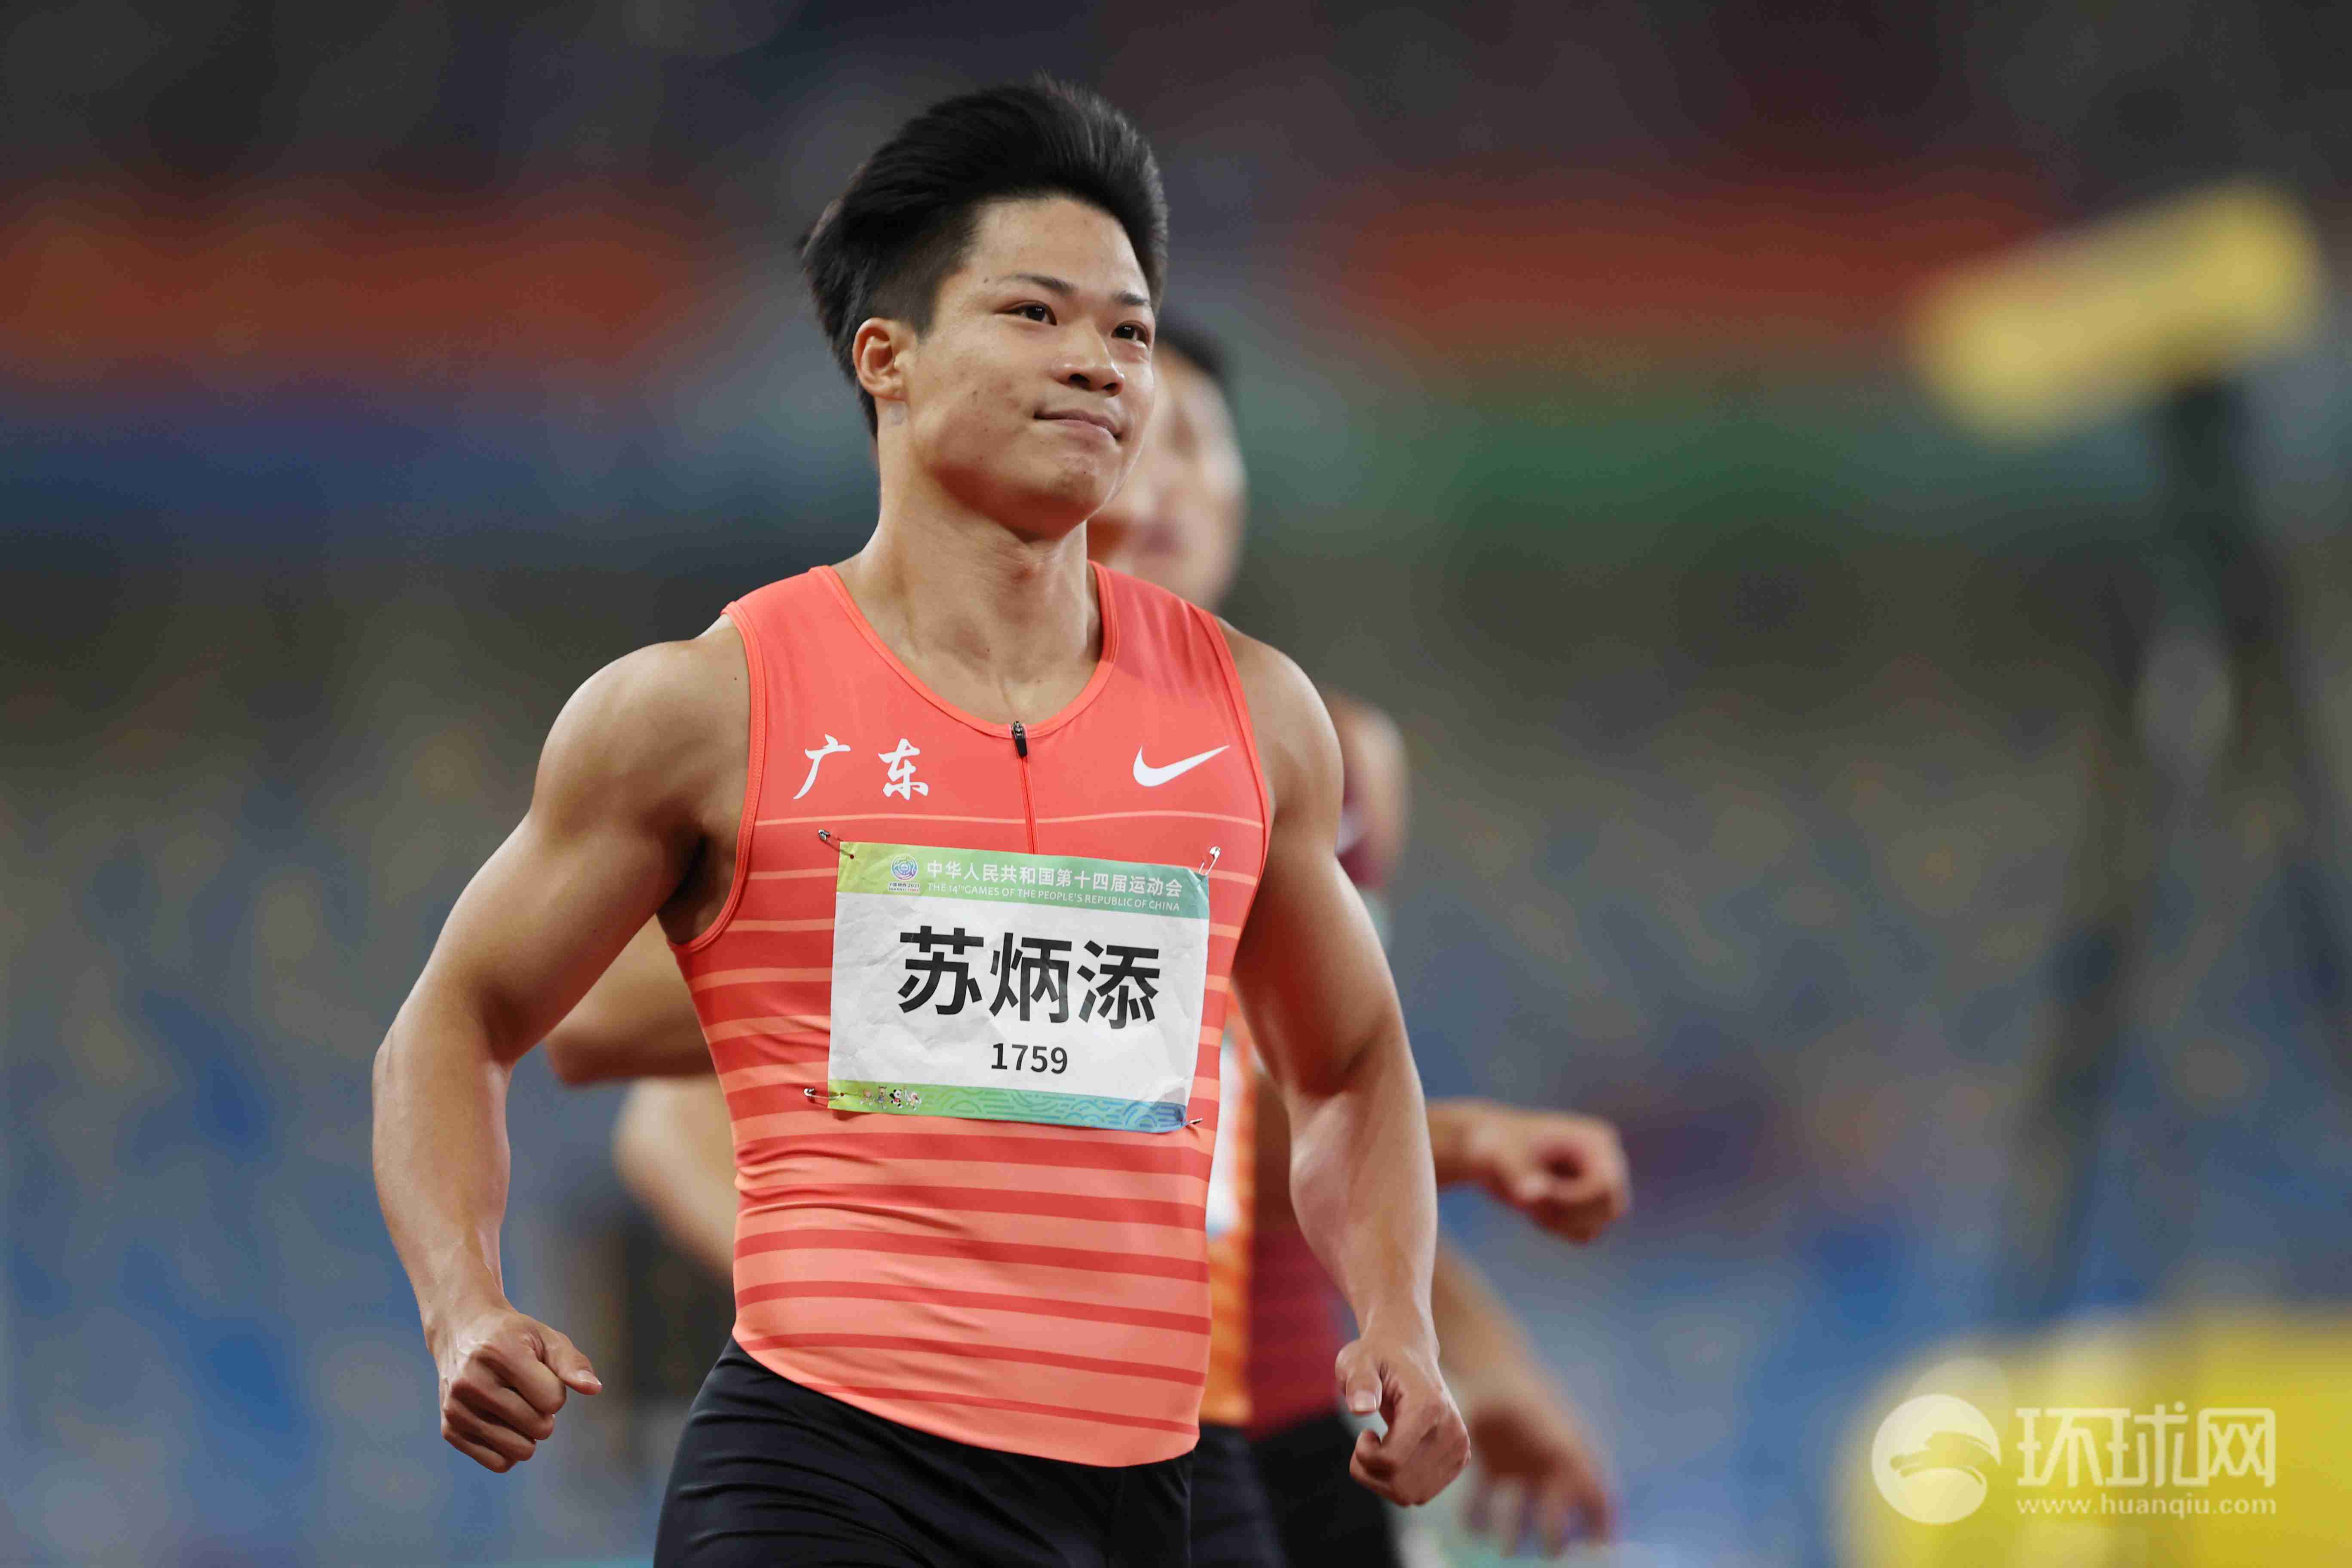 图集9秒95苏炳添夺全运会男子100米冠军